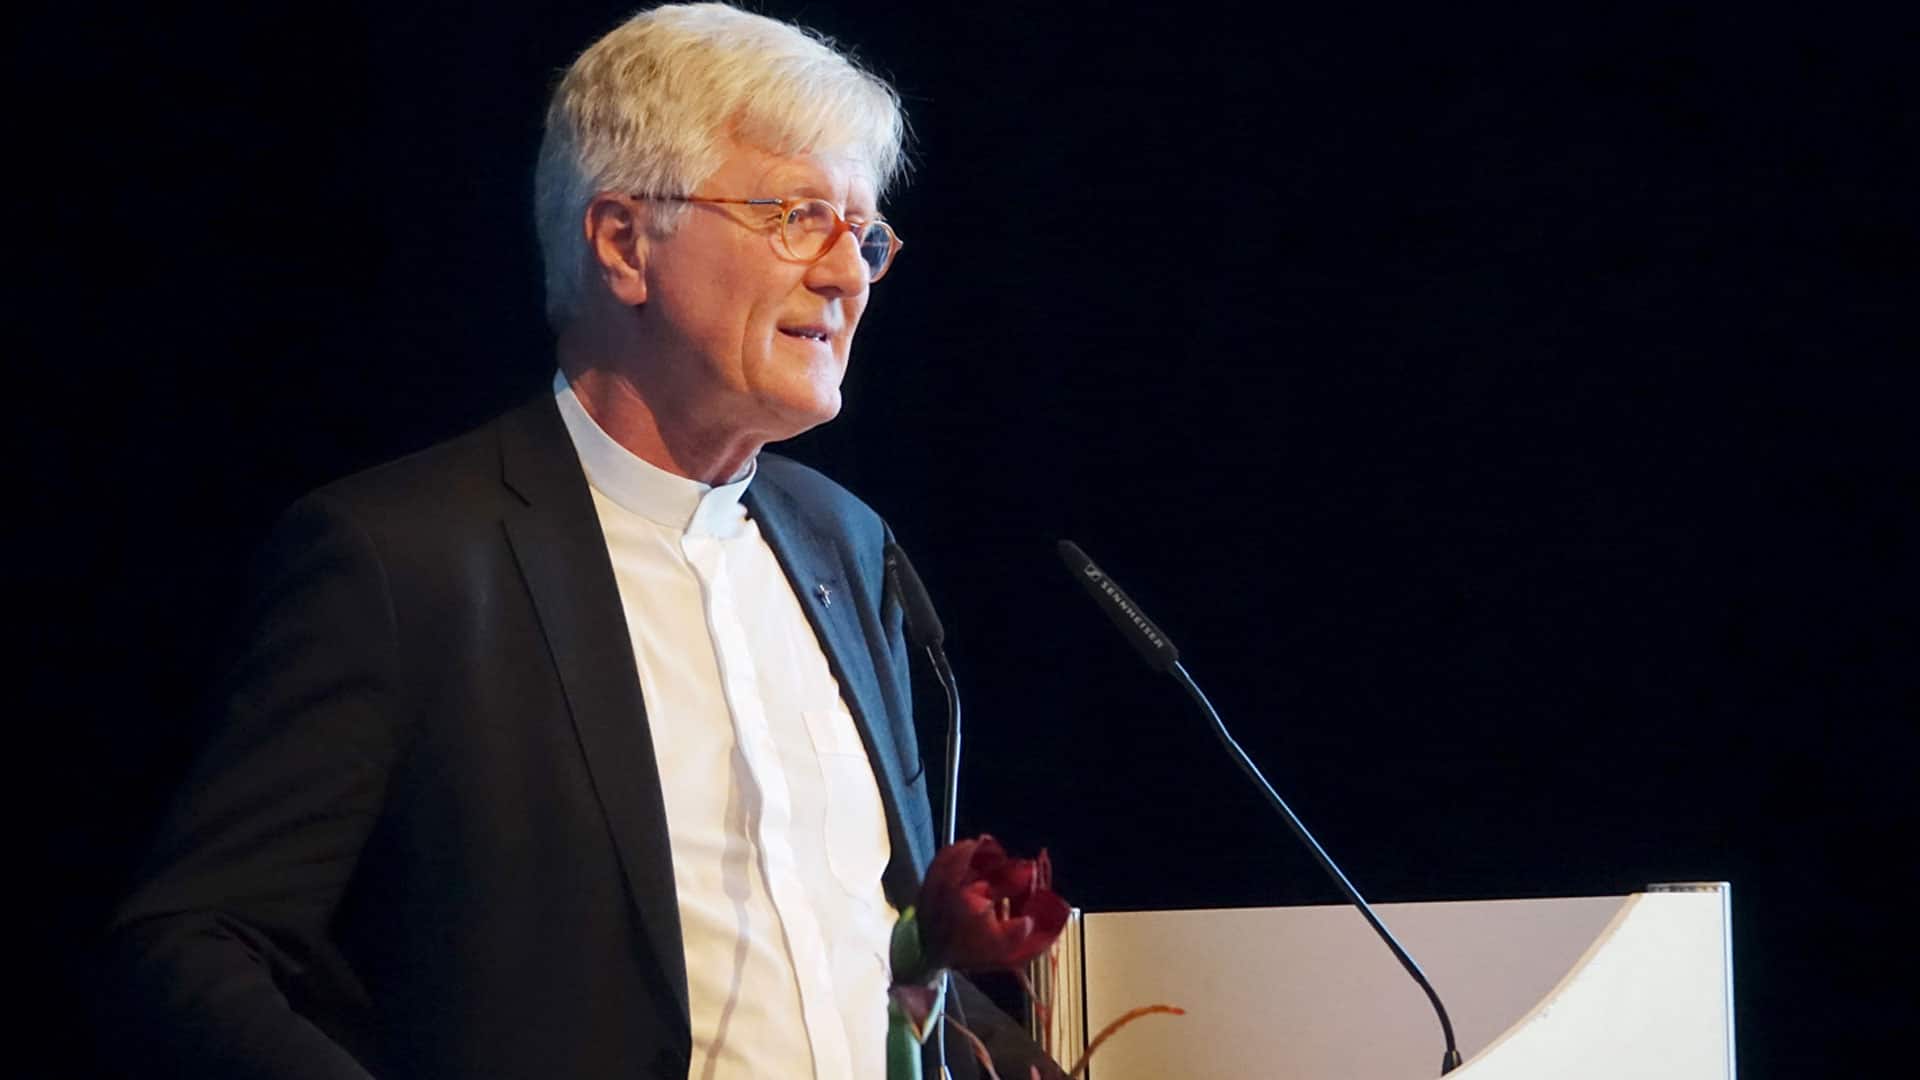 Heinrich Bedford-Strohm ist seit 2014 Ratsvorsitzender der Evangelischen Kirche in Deutschland (EKD)